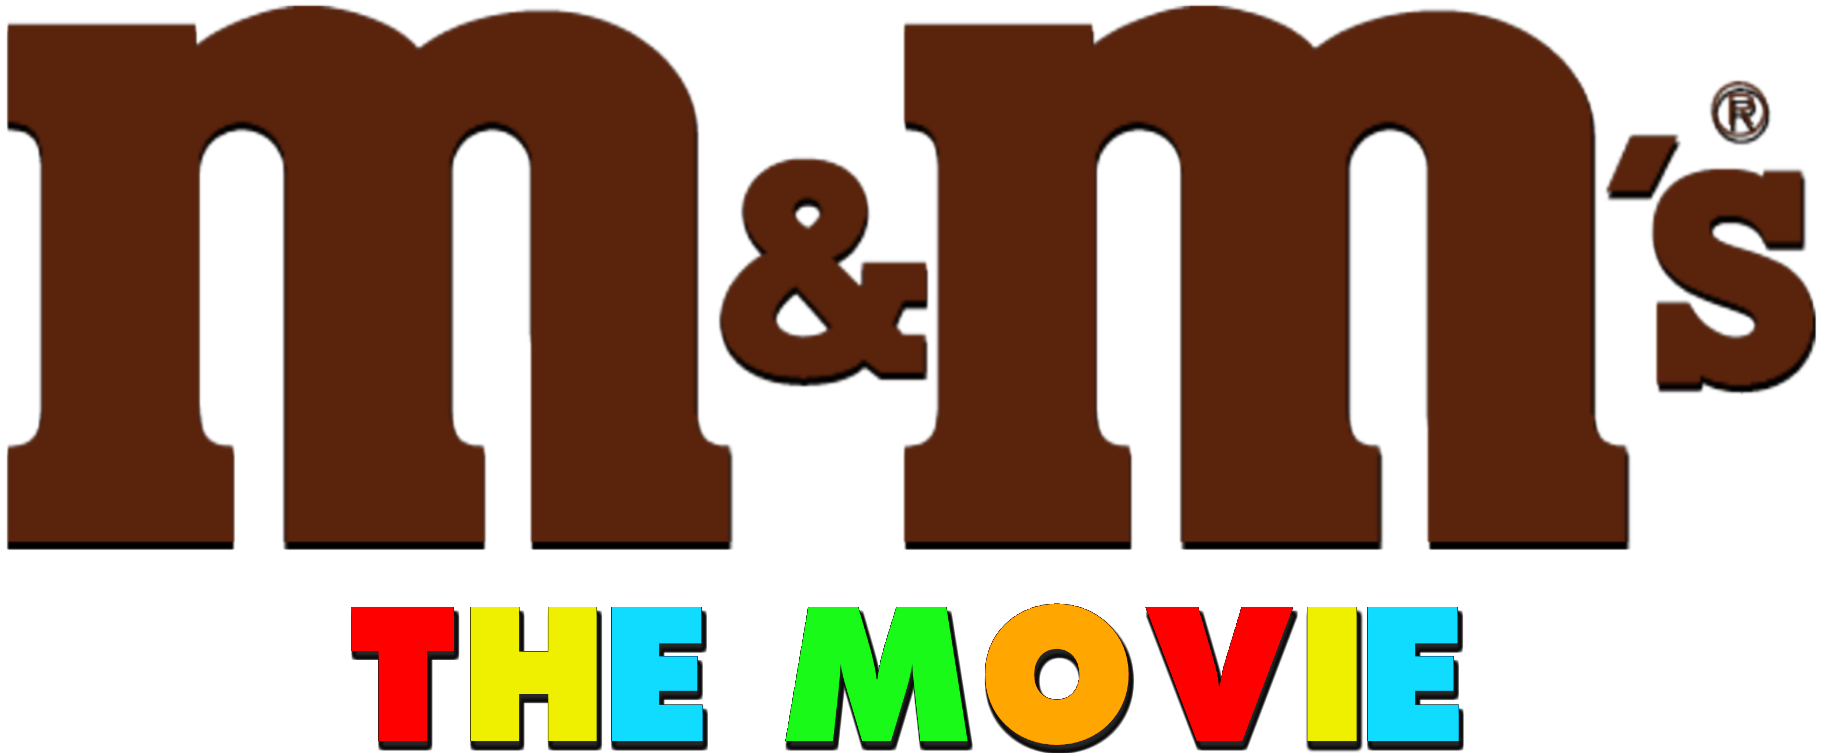 M&M's, Logopedia